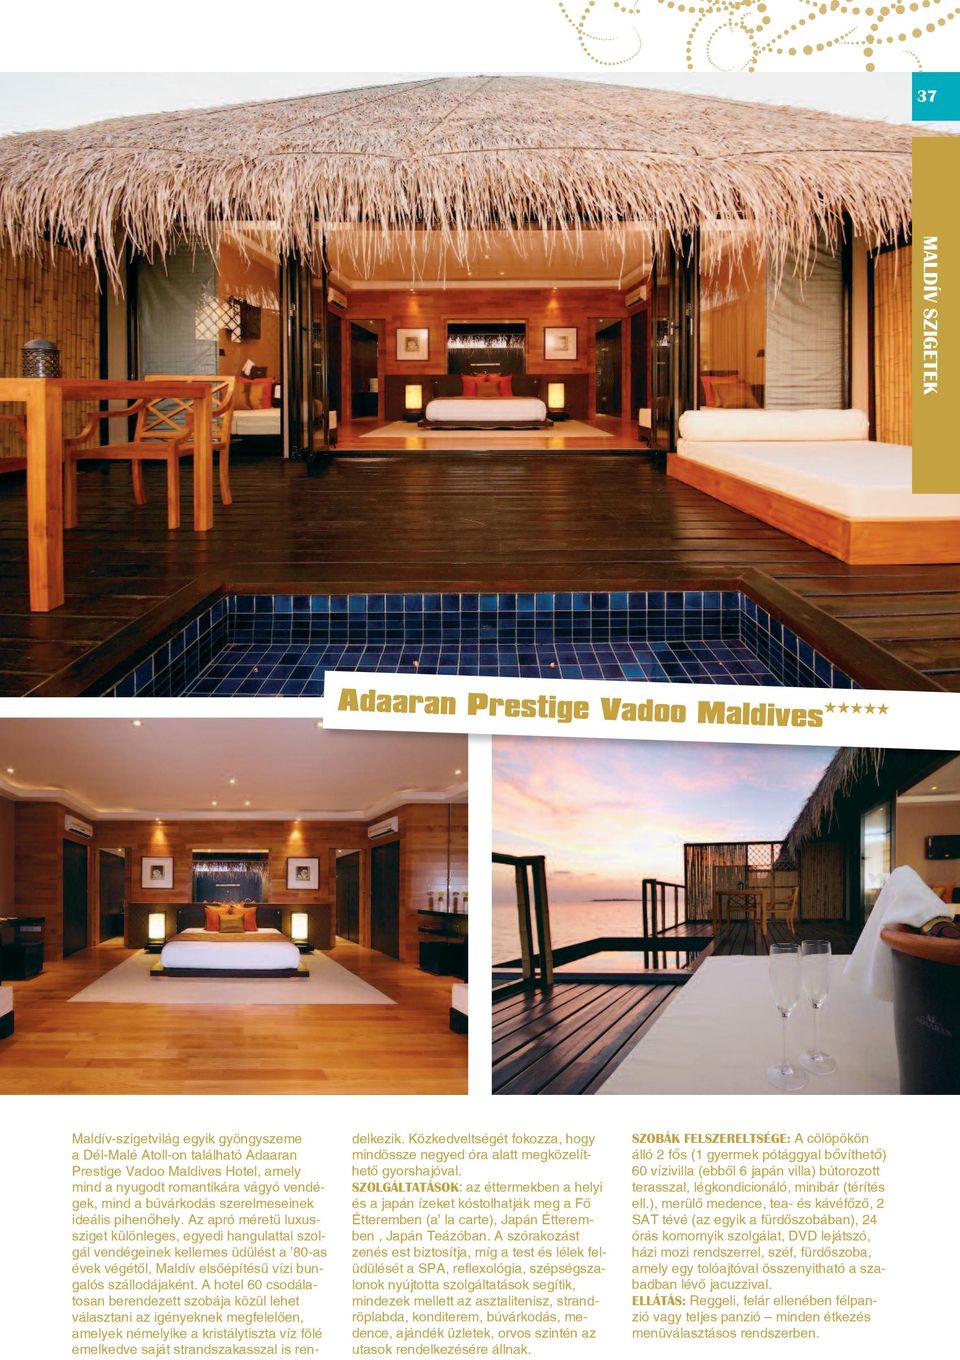 Az apró méretû luxussziget különleges, egyedi hangulattal szolgál vendégeinek kellemes üdülést a 80-as évek végétôl, Maldív elsôépítésû vízi bungalós szállodájaként.